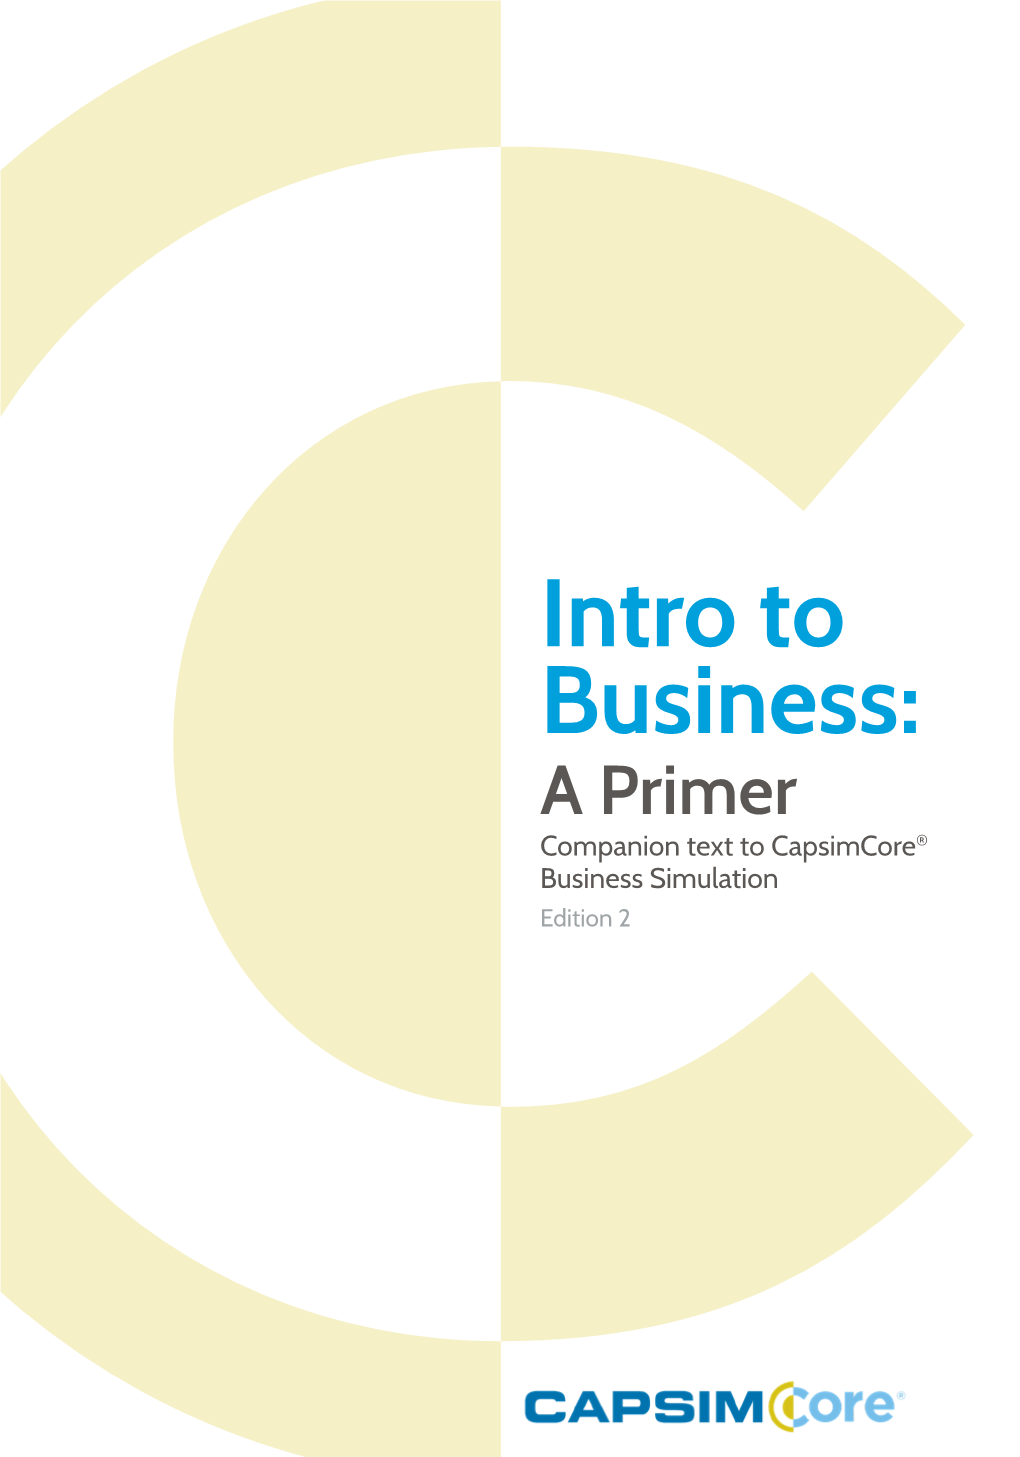 Capsimcore Intro to Business: a Primer Edition 2